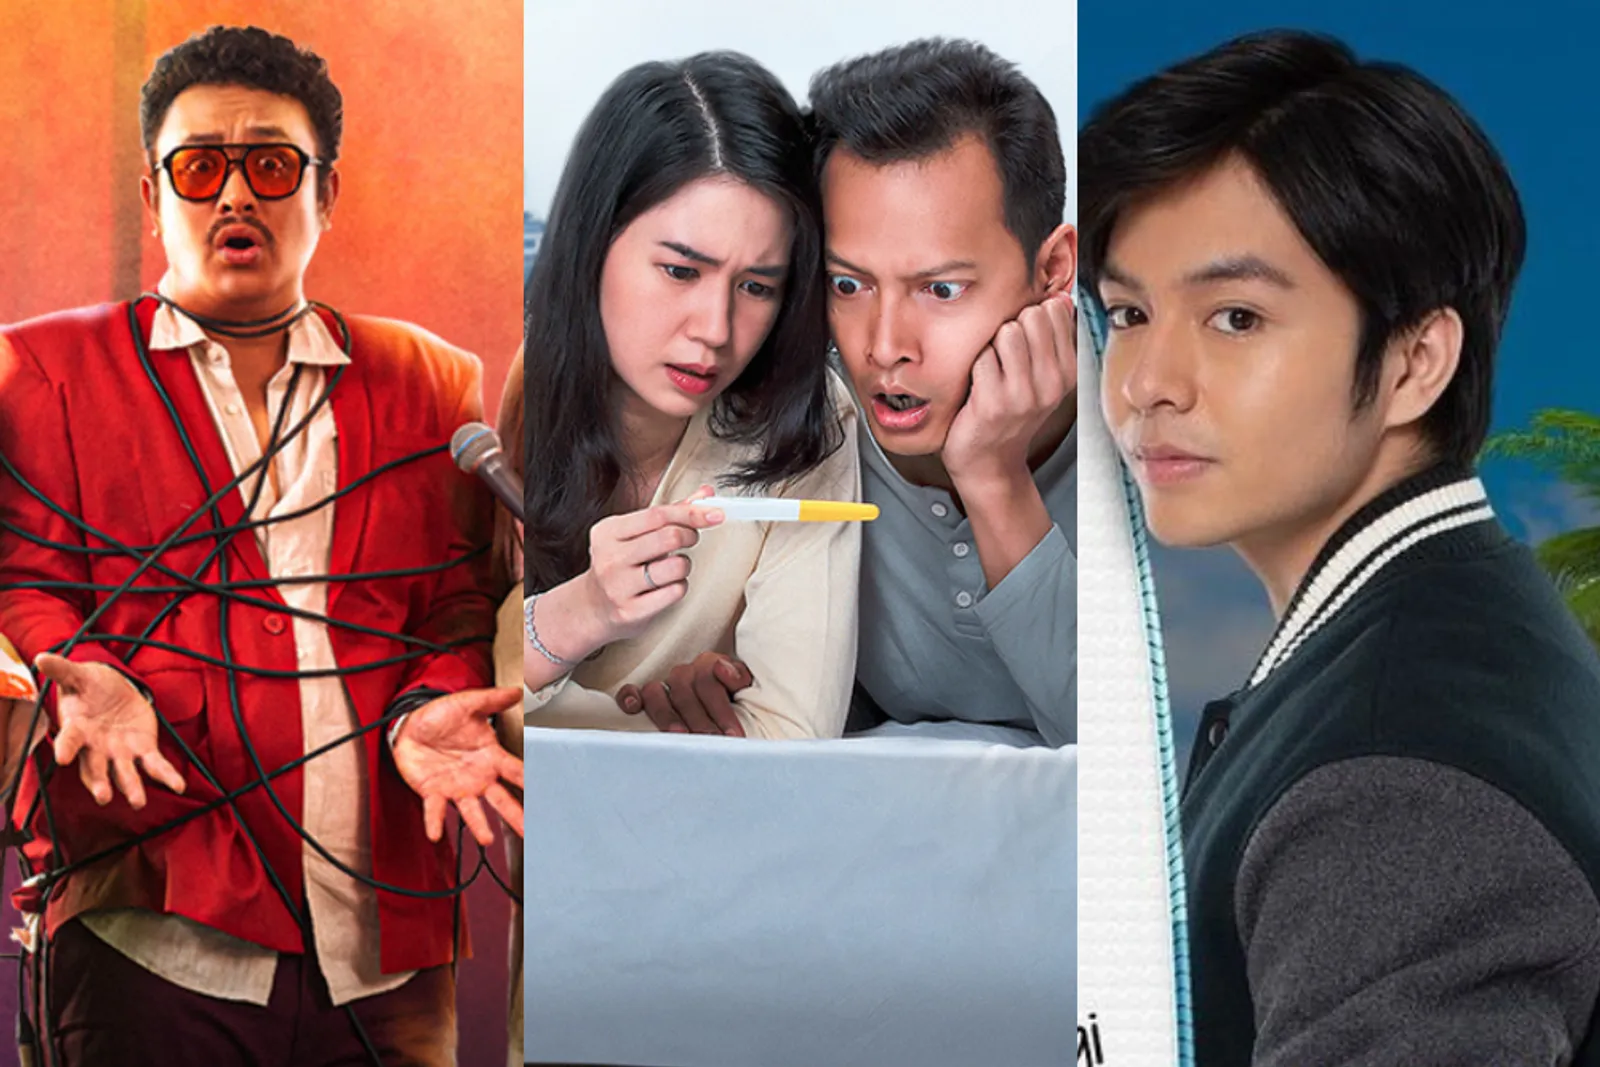 Daftar 13 Film dan Serial Indonesia Terbaru di Prime Video